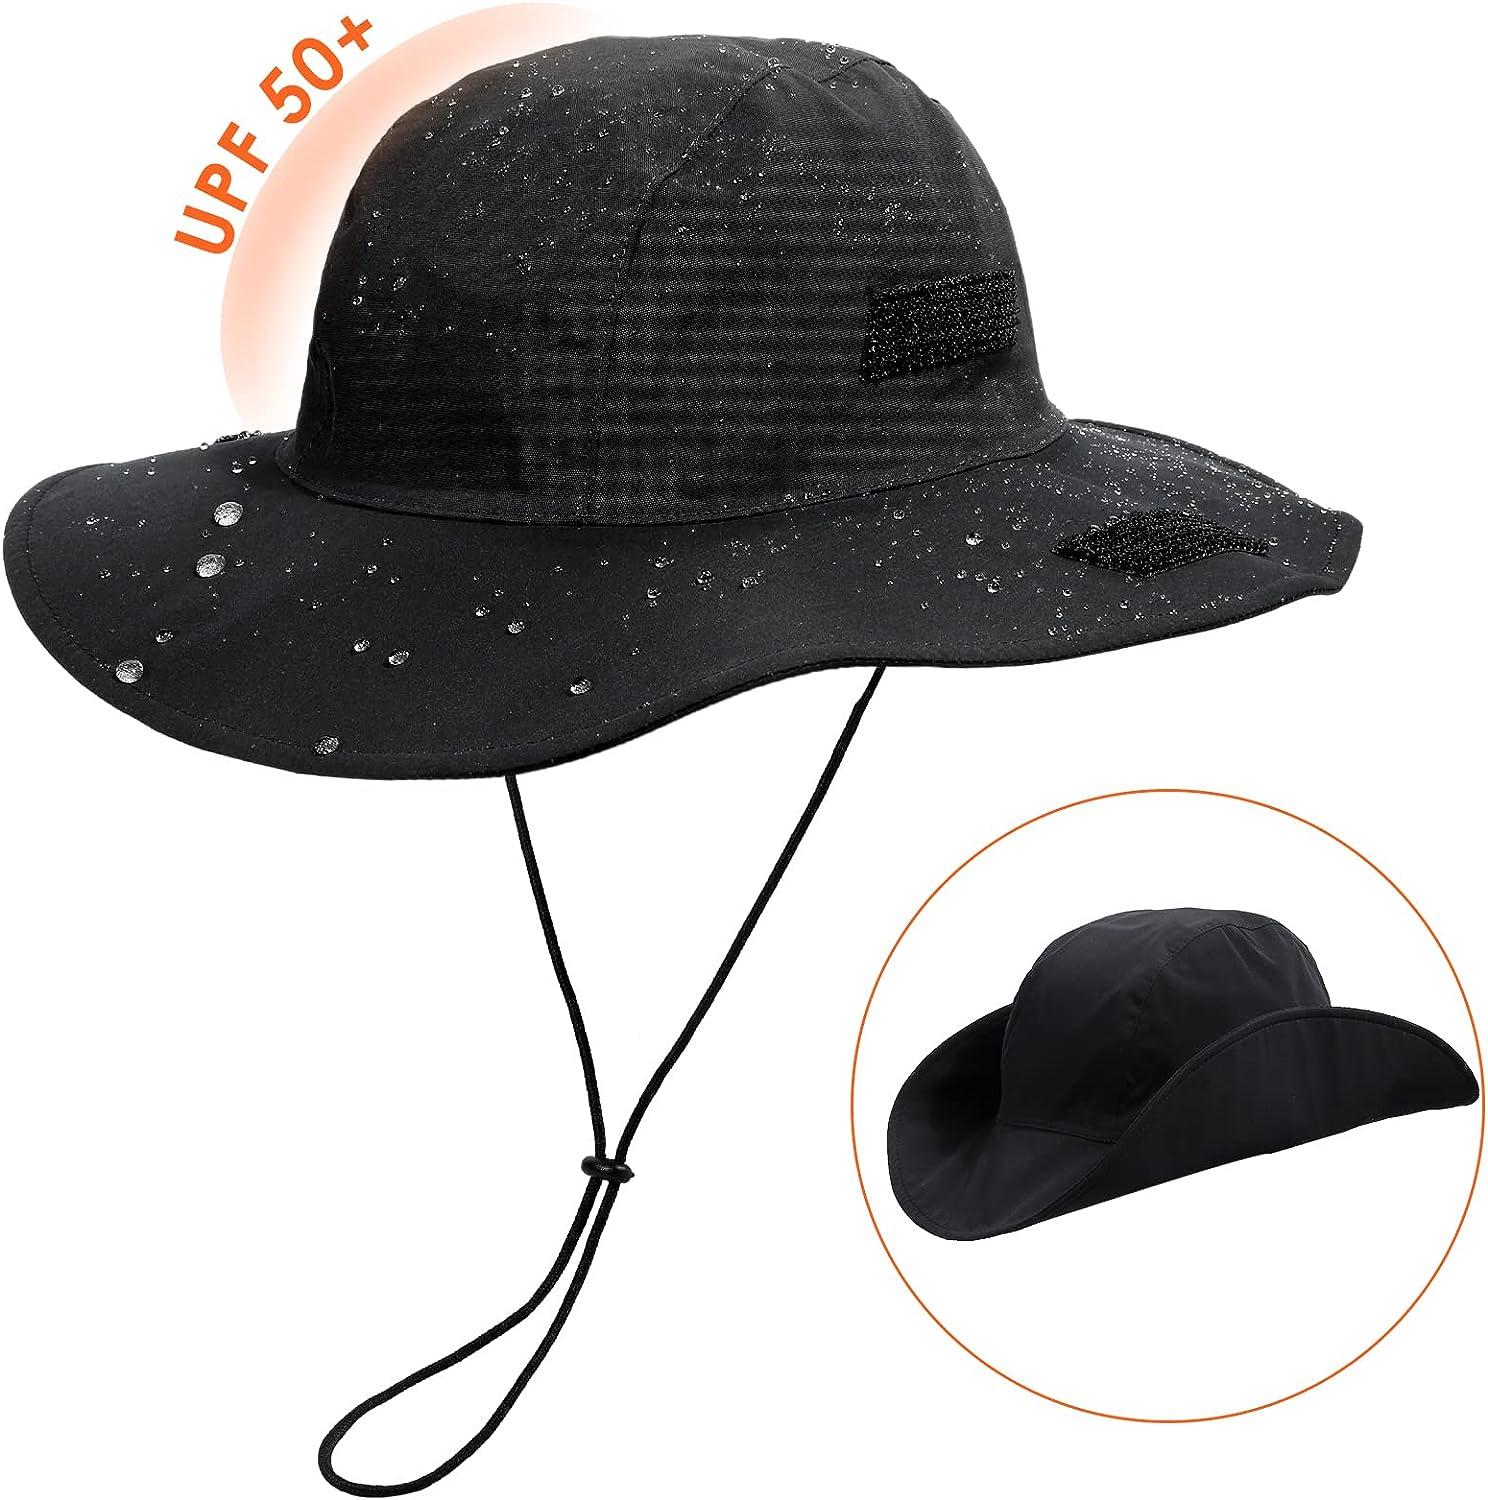 Womens Winter Waterproof Bucket Hat Warm Fleece Lined Rain Hat